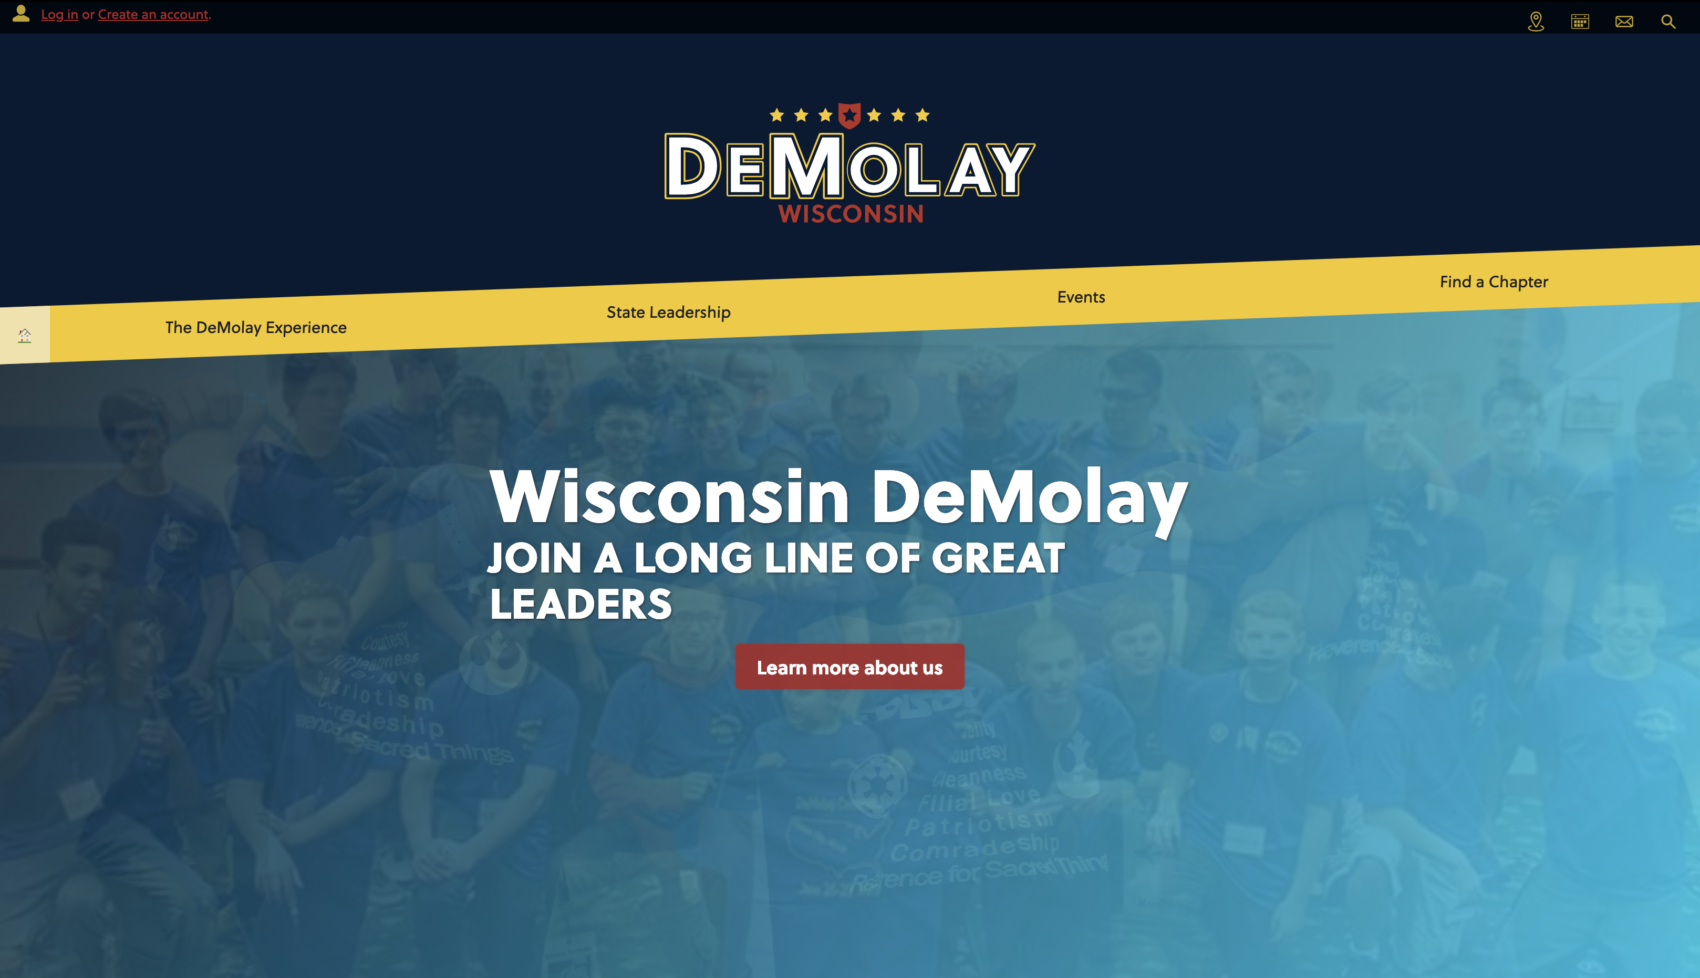 Wisconsin DeMolay website